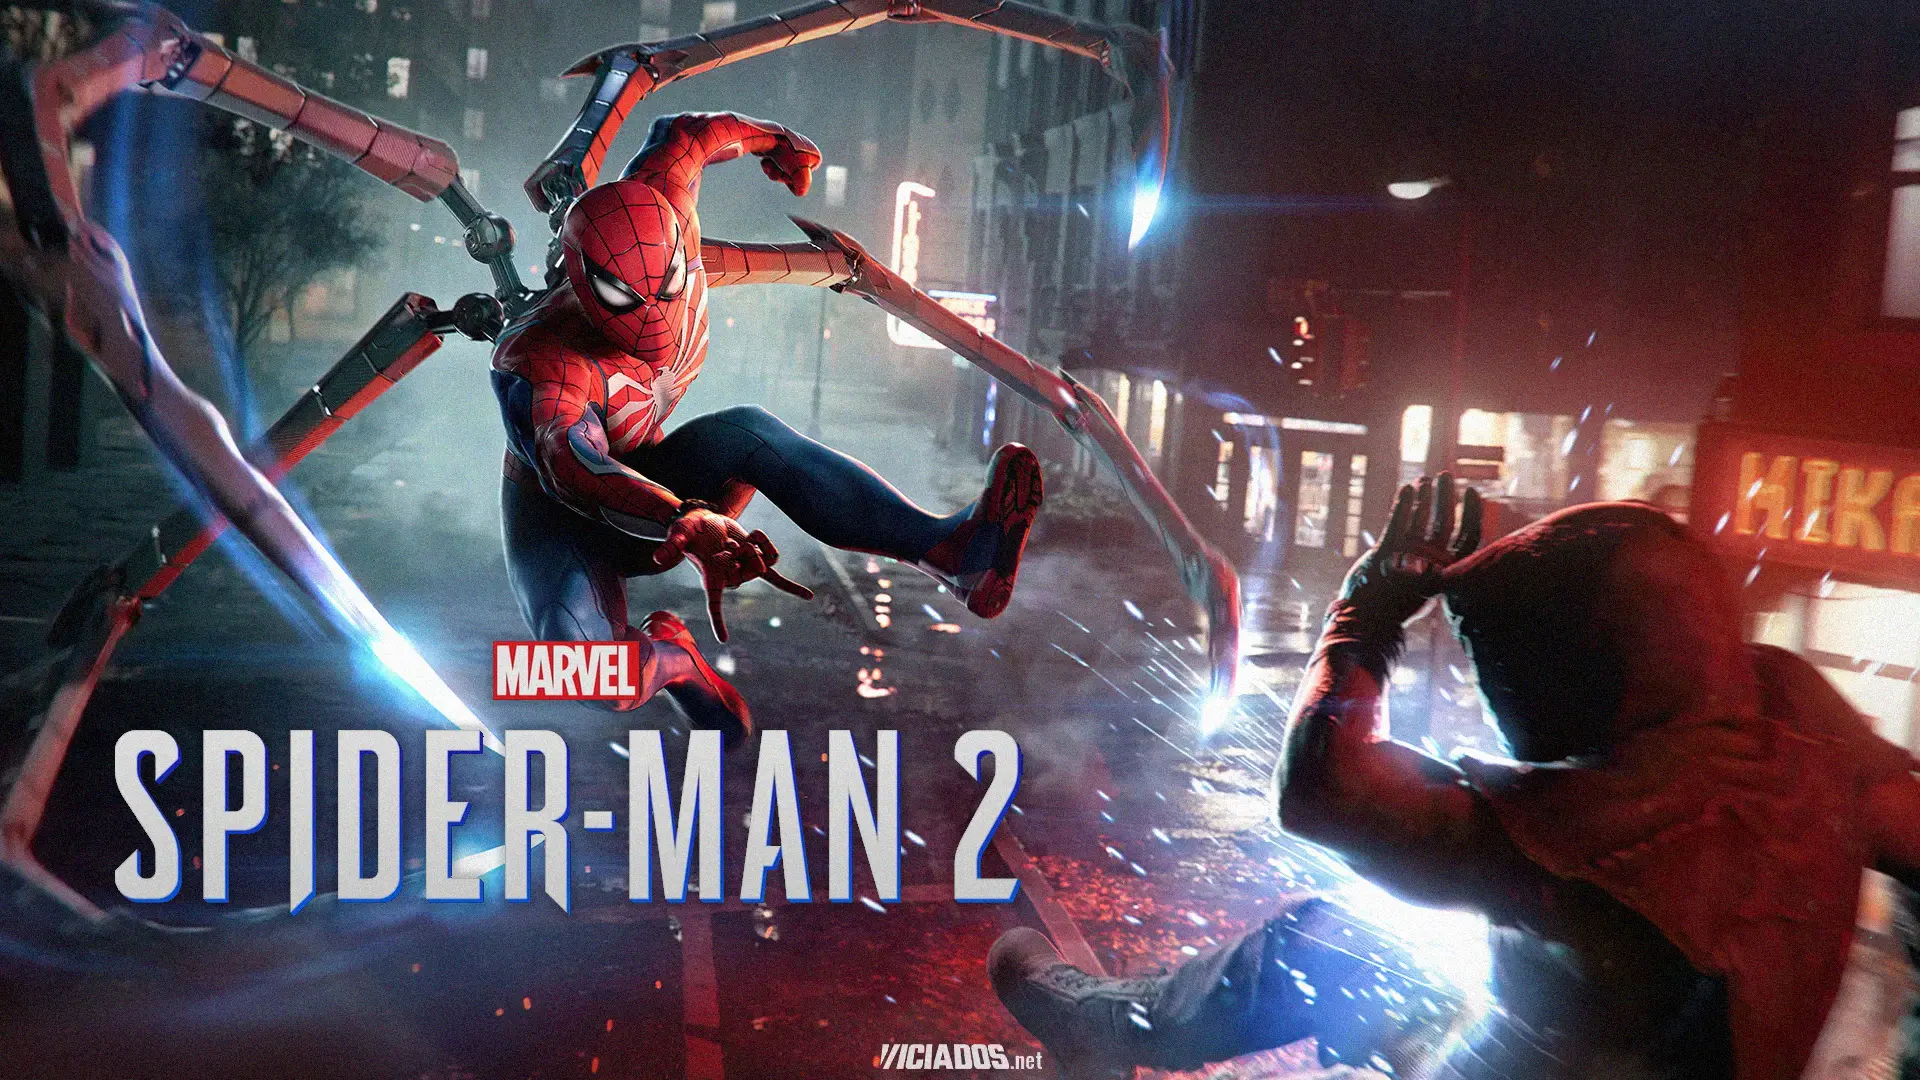 Marvel's Spider-Man 2 | Vaza informações sobre a história, final, vilões e mais 2023 Viciados